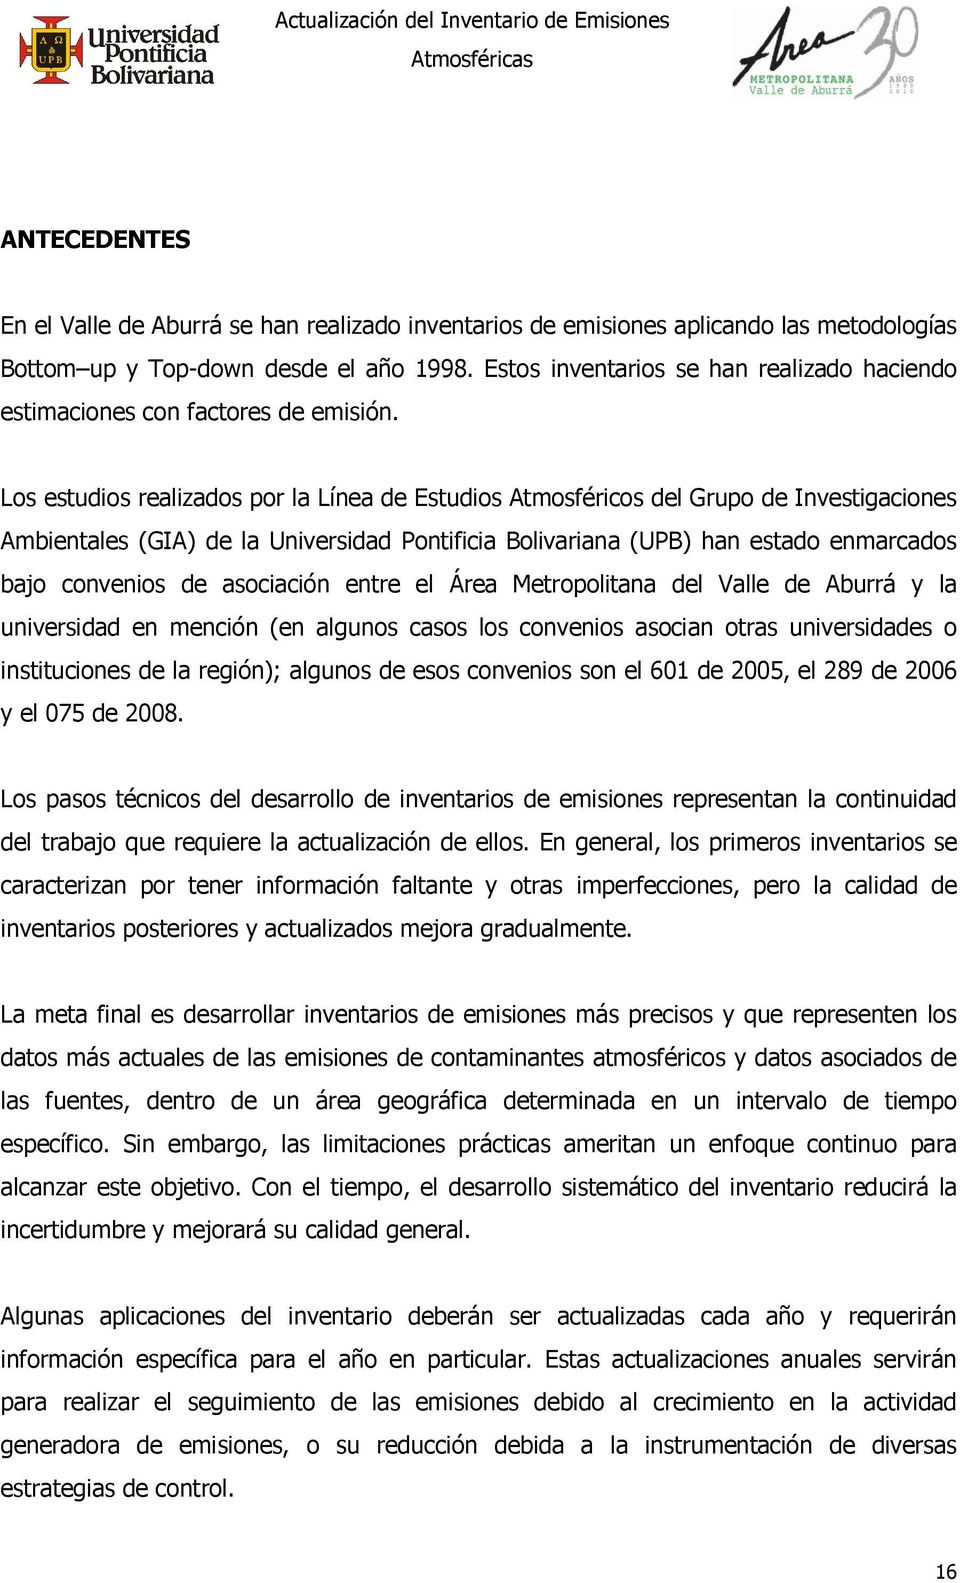 Los estudios realizados por la Línea de Estudios Atmosféricos del Grupo de Investigaciones Ambientales (GIA) de la Universidad Pontificia Bolivariana (UPB) han estado enmarcados bajo convenios de